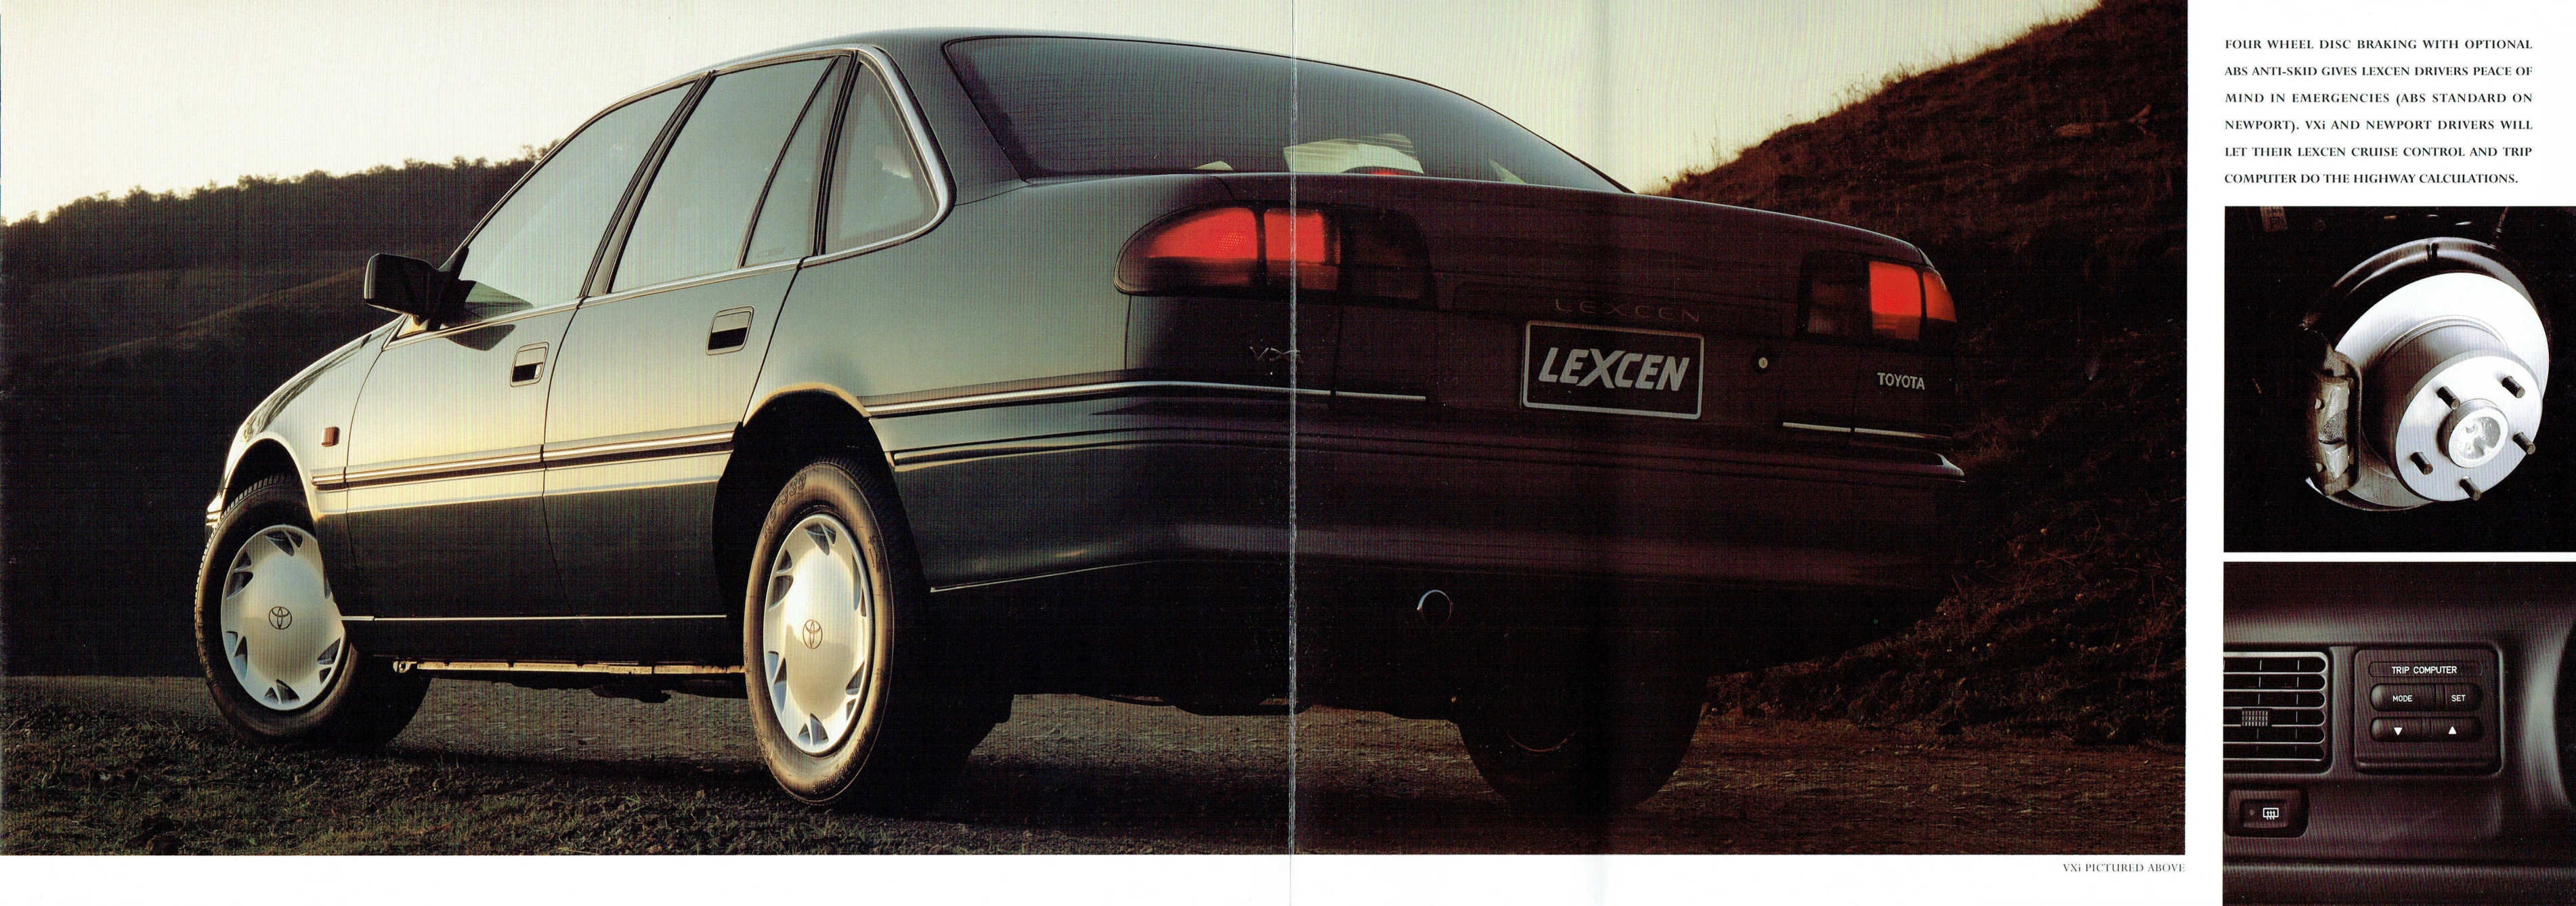 1994_Toyota_Lexcen-04-05